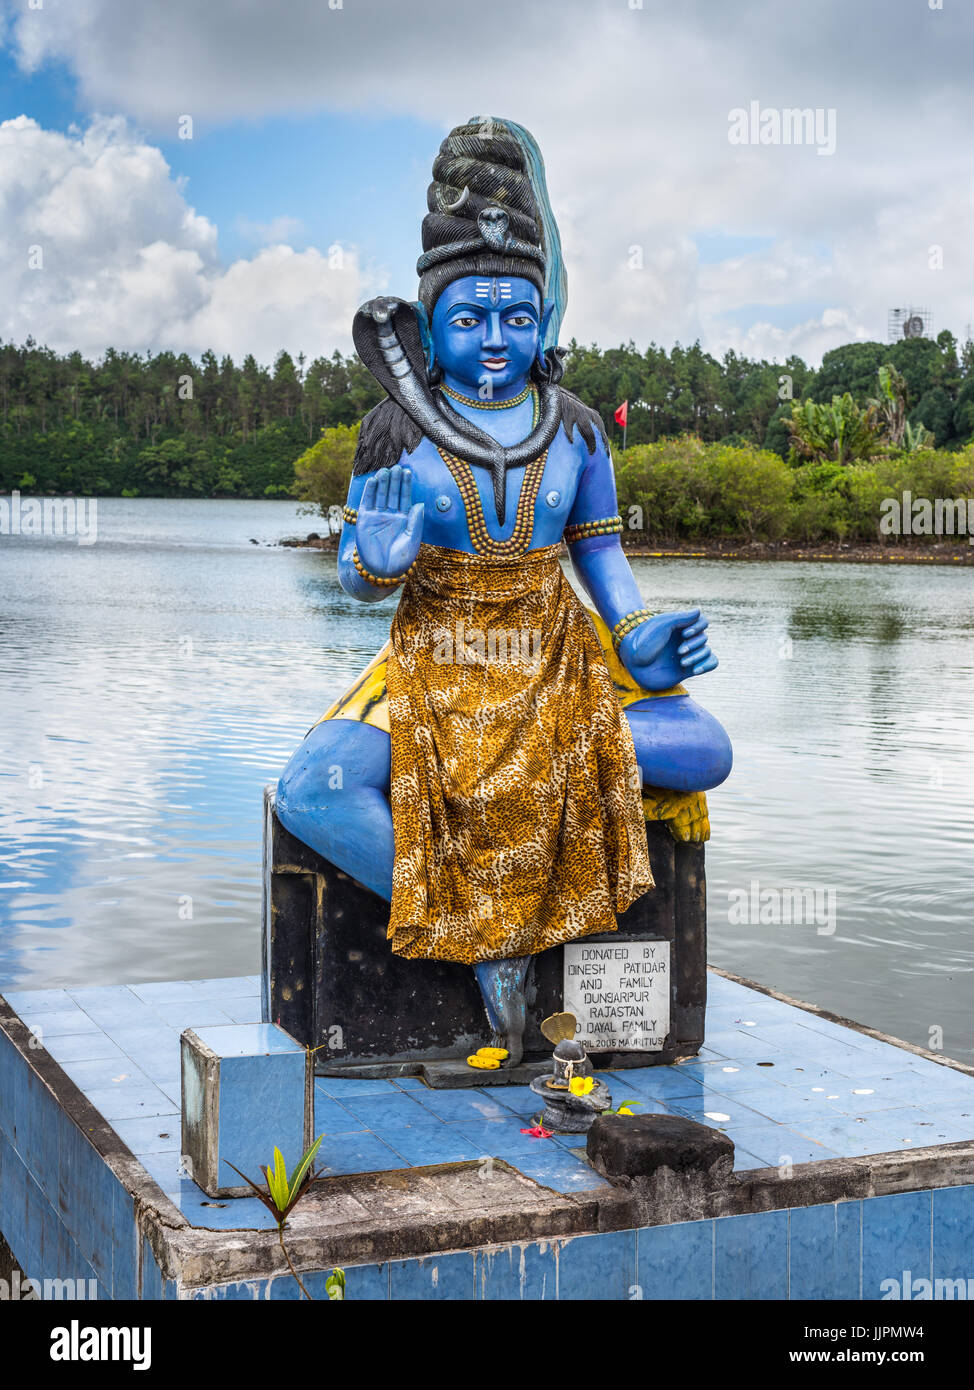 Grand Bassin, Mauritius - December 26, 2017: The Shiva statue at Ganga Talao (Grand Bassin) Hindu temple, Mauritius. It's a copy of the Shiva statue o Stock Photo